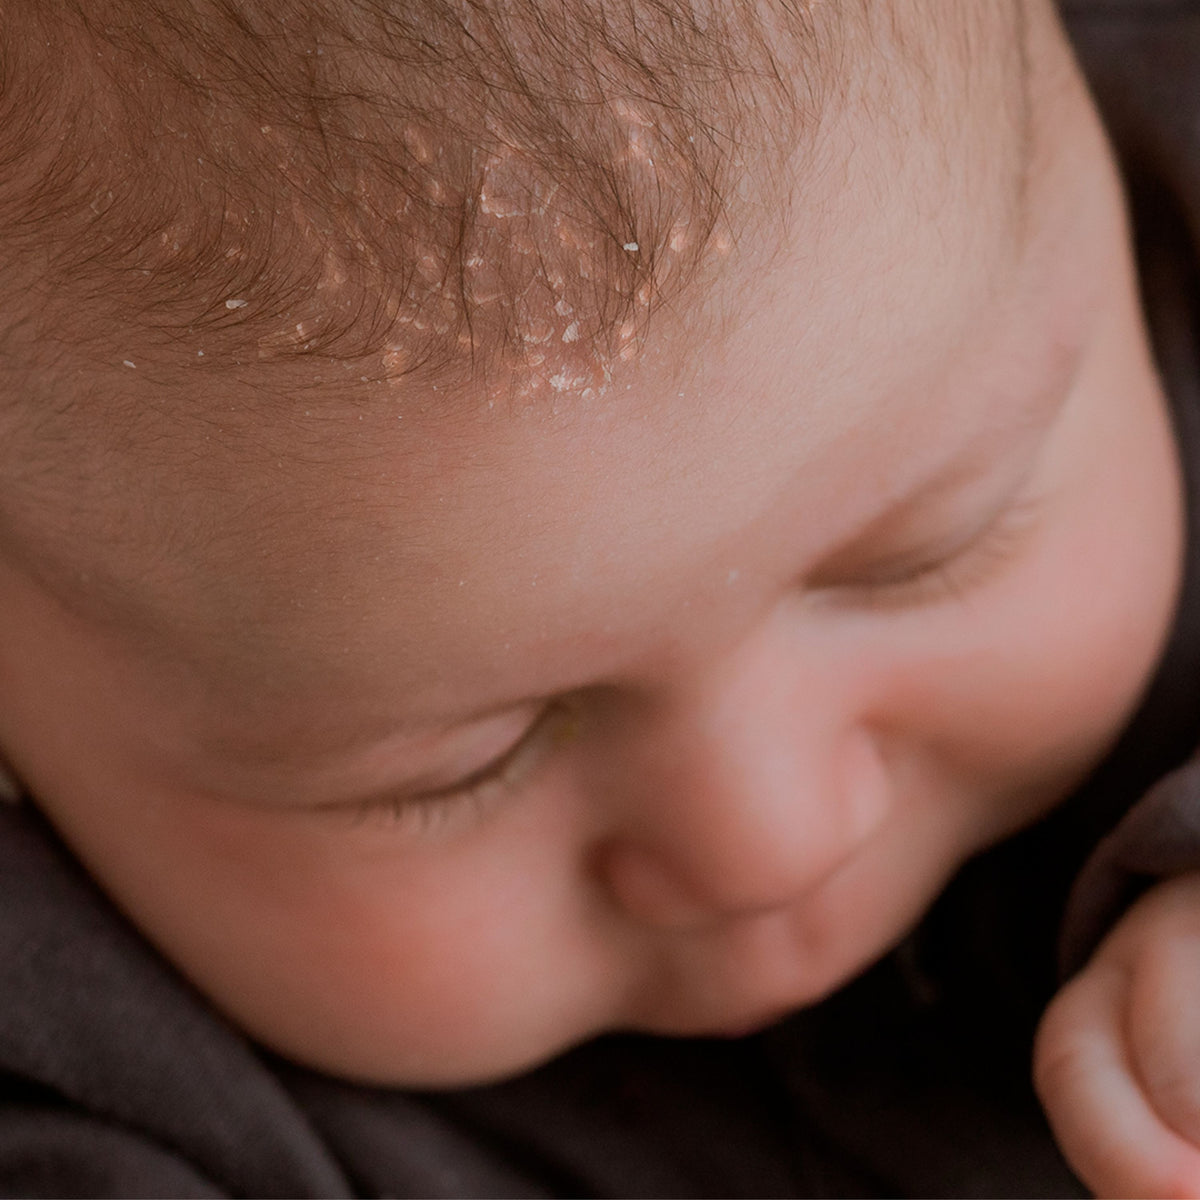 La crosta lattea nei bambini: cause, consigli e rimedi utili